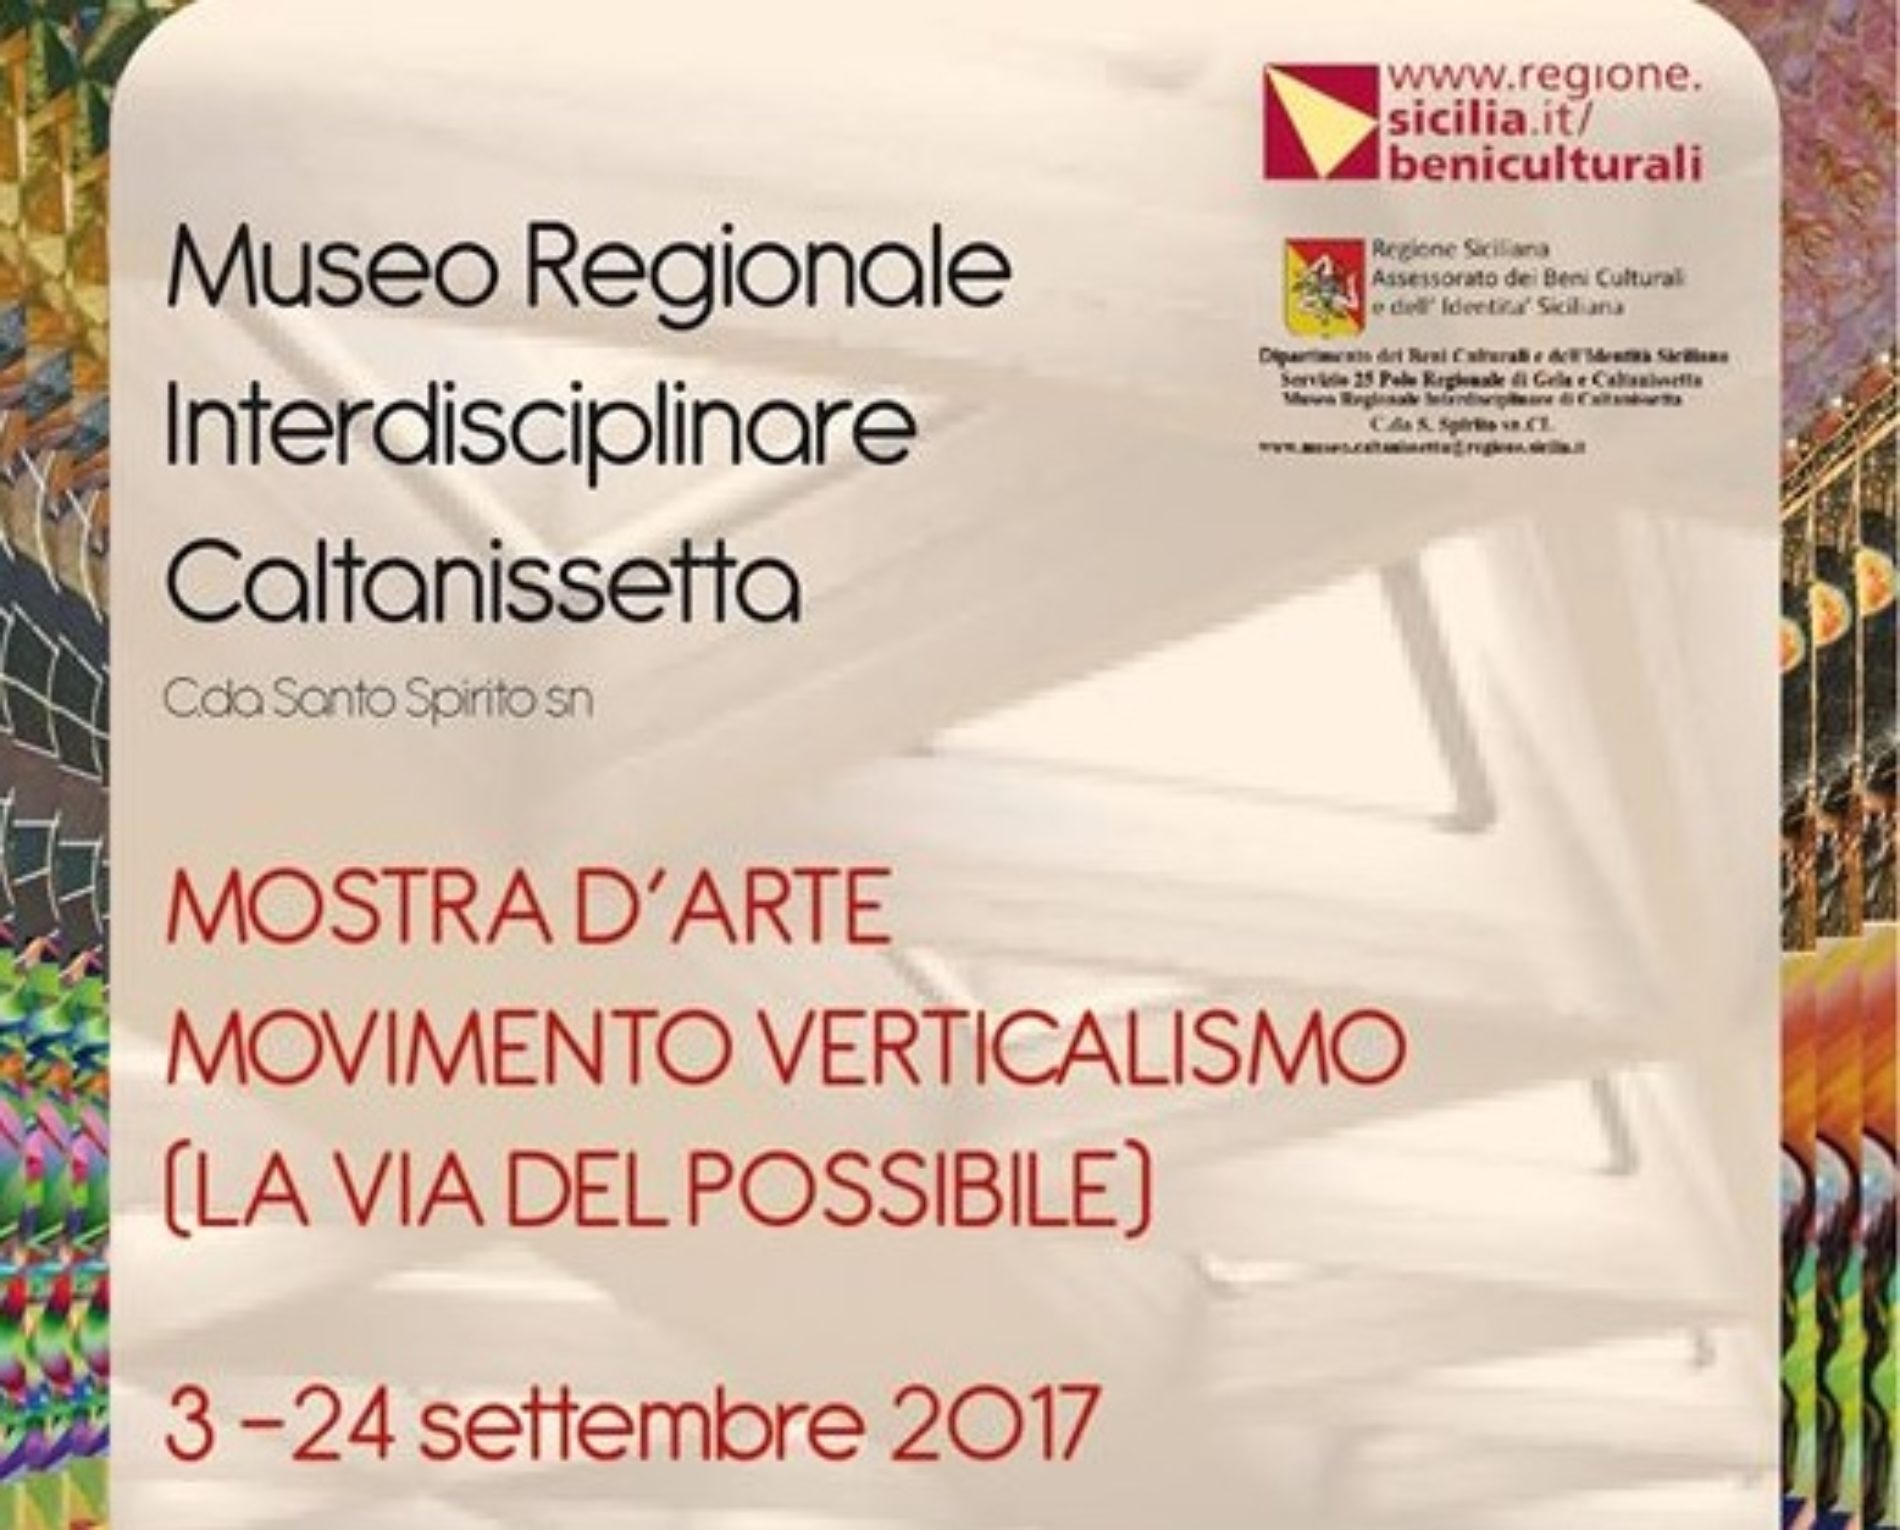 Esposizione d’arte “Movimento Verticalismo” La Via del Possibile al Museo Regionale Interdisciplinare di Caltanissetta